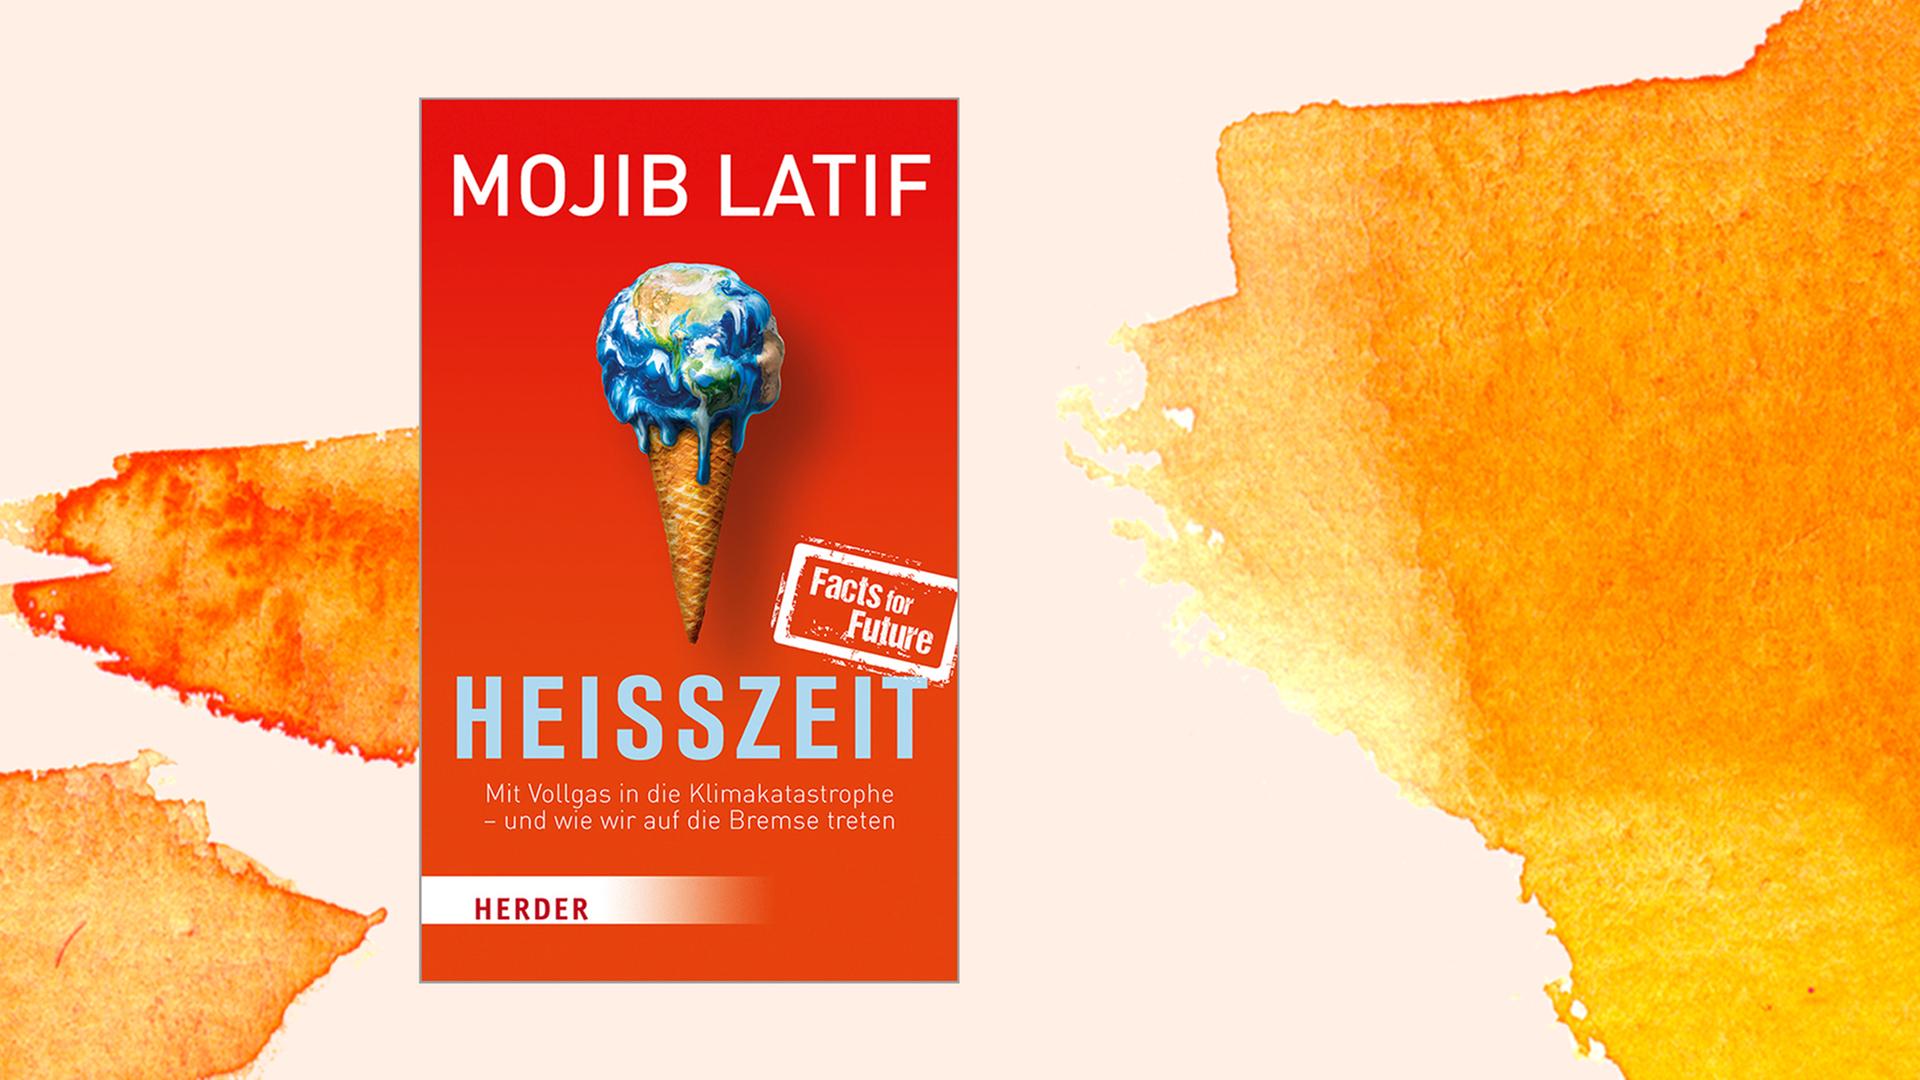 Buchcover von Mojib Latif "Heisszeit", Herder Verlag, 2020.